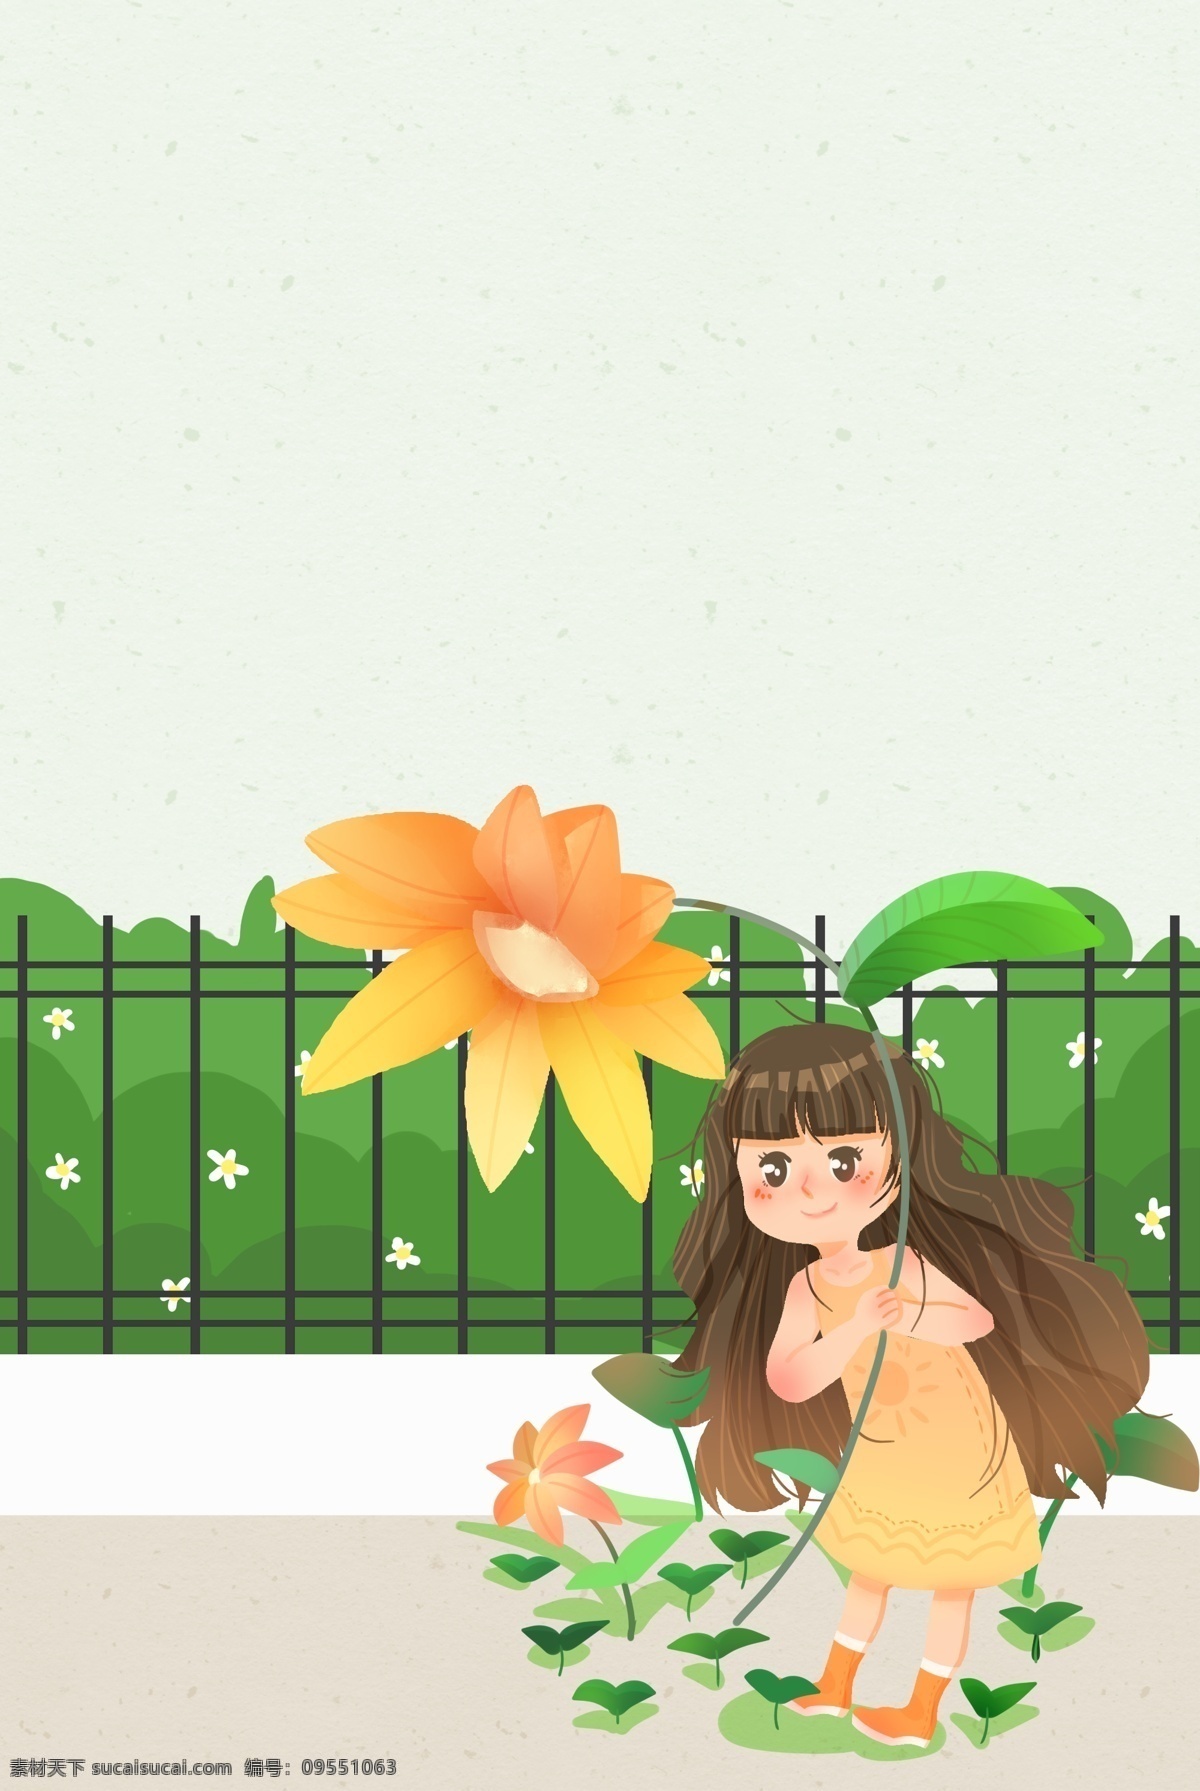 二十四节气 之春 分 植物 女孩 插画 节气 春分 传统节气 人物 插画风 促销海报